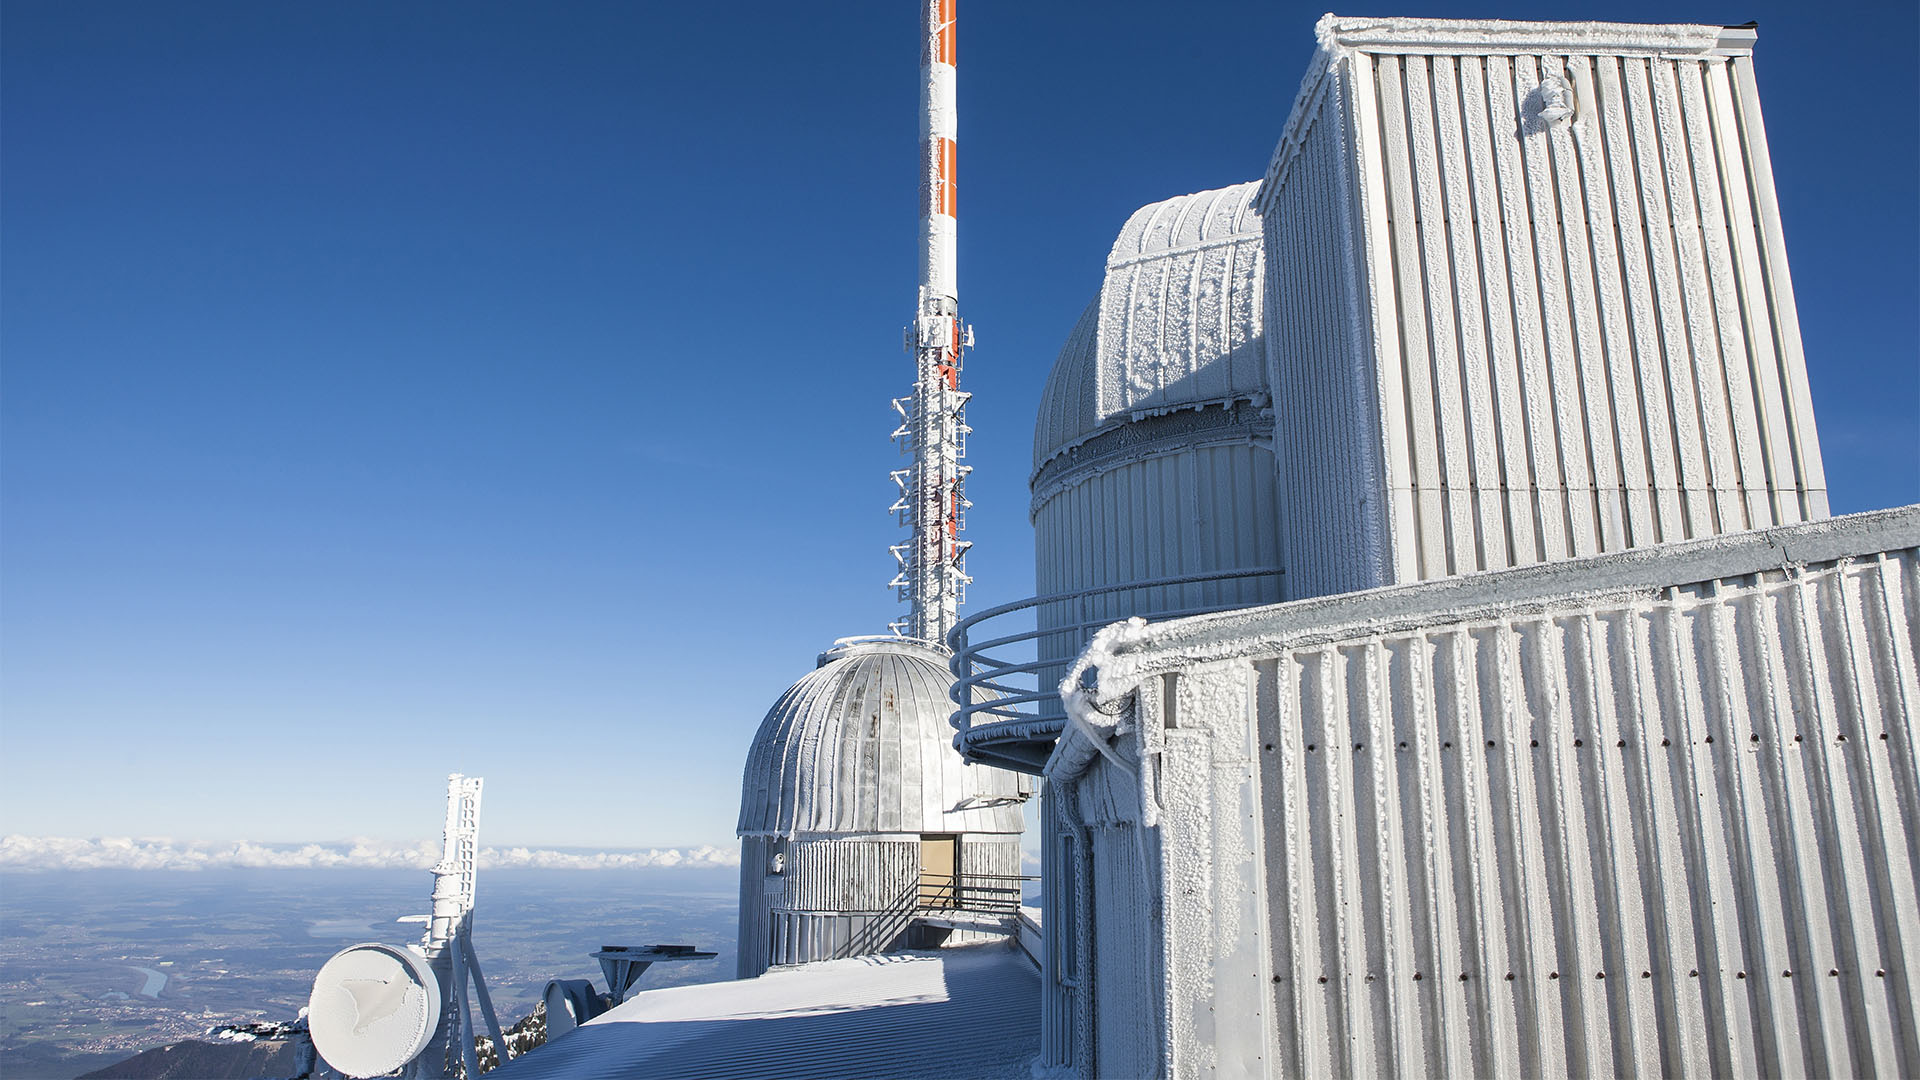 Observatorium am Wendelstein in Bayern.